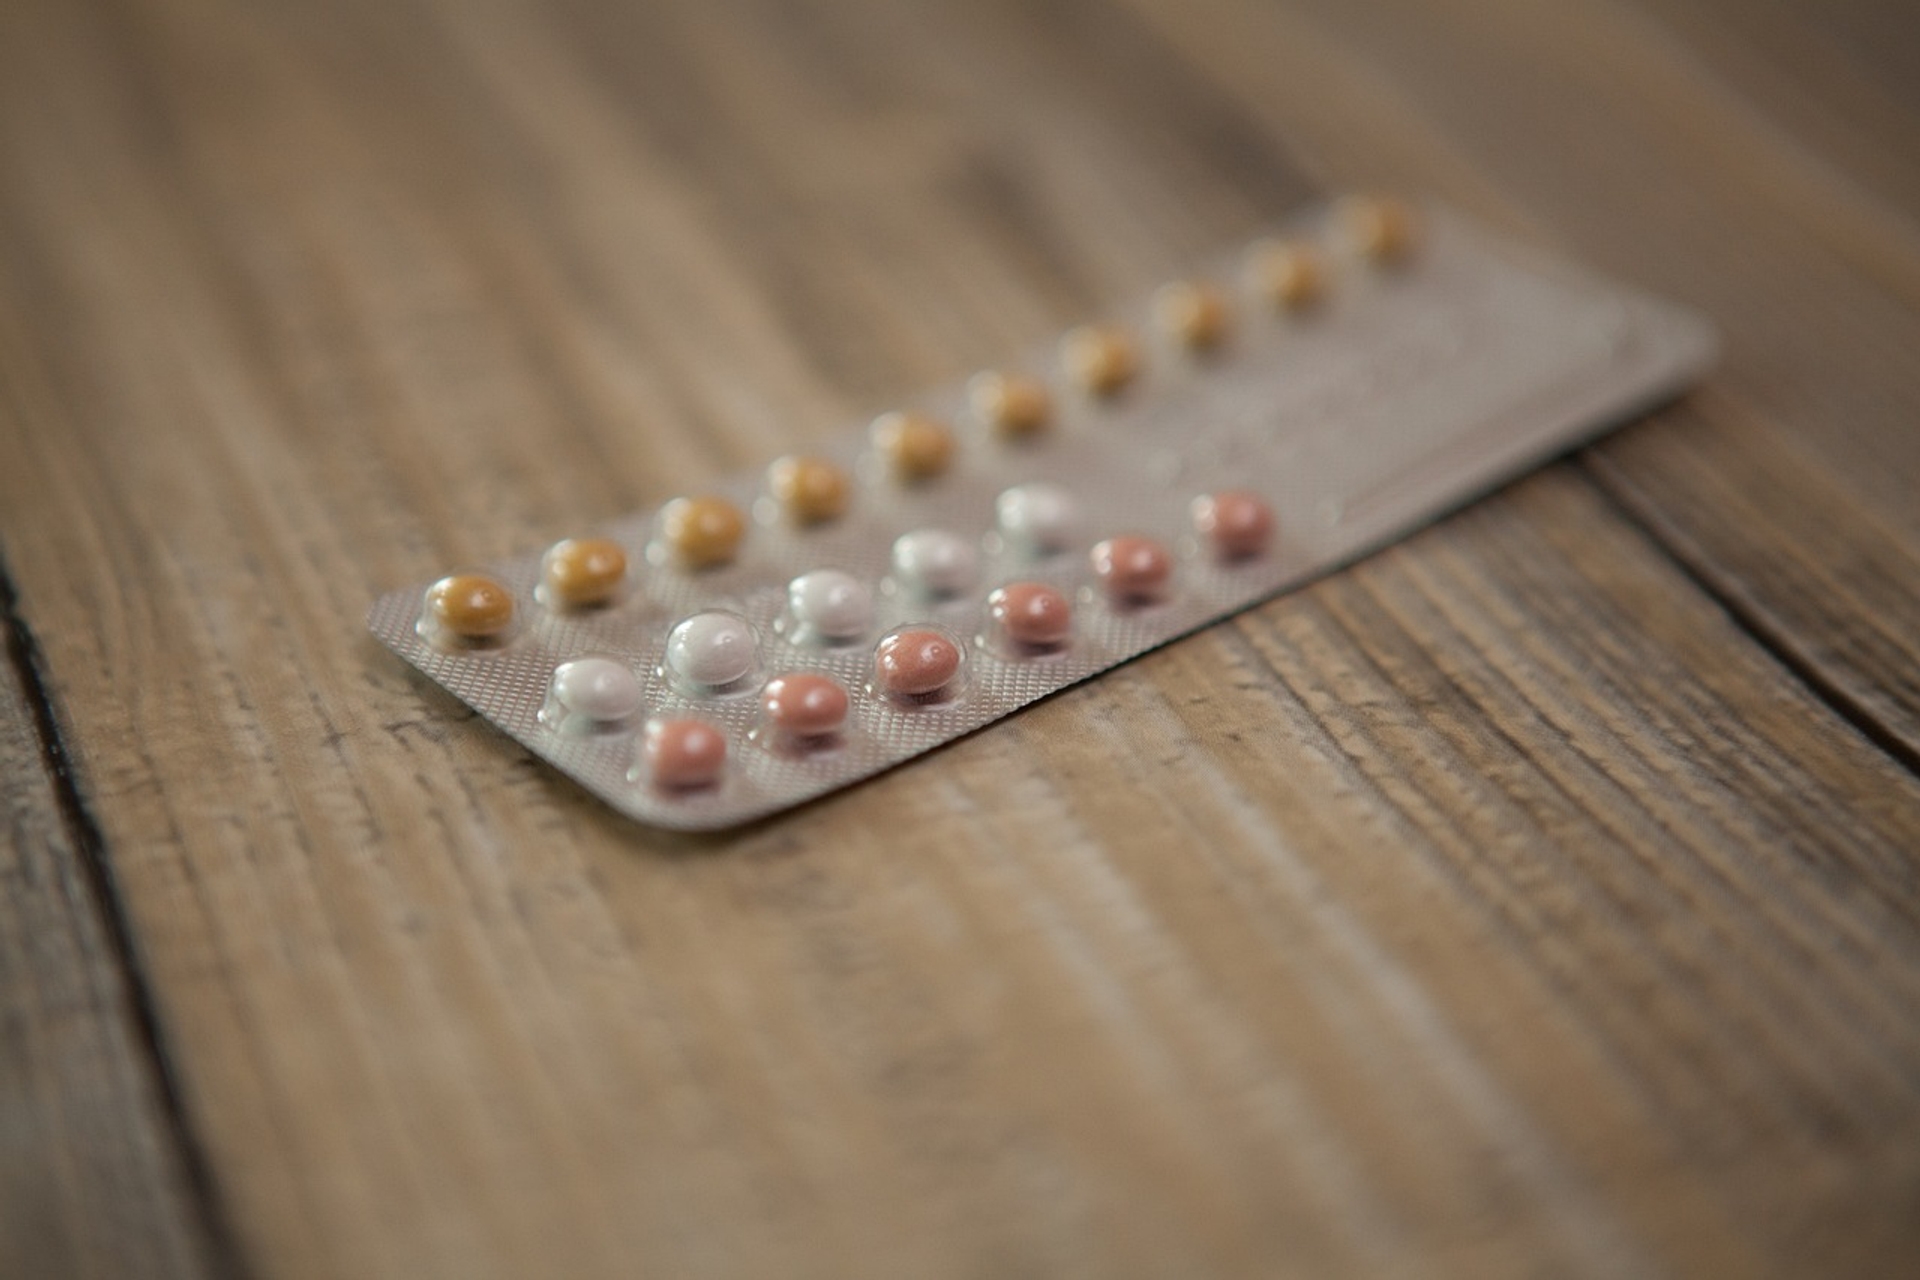 Afbeelding van Waarom kiezen steeds meer vrouwen voor natuurlijke anticonceptie­methoden?